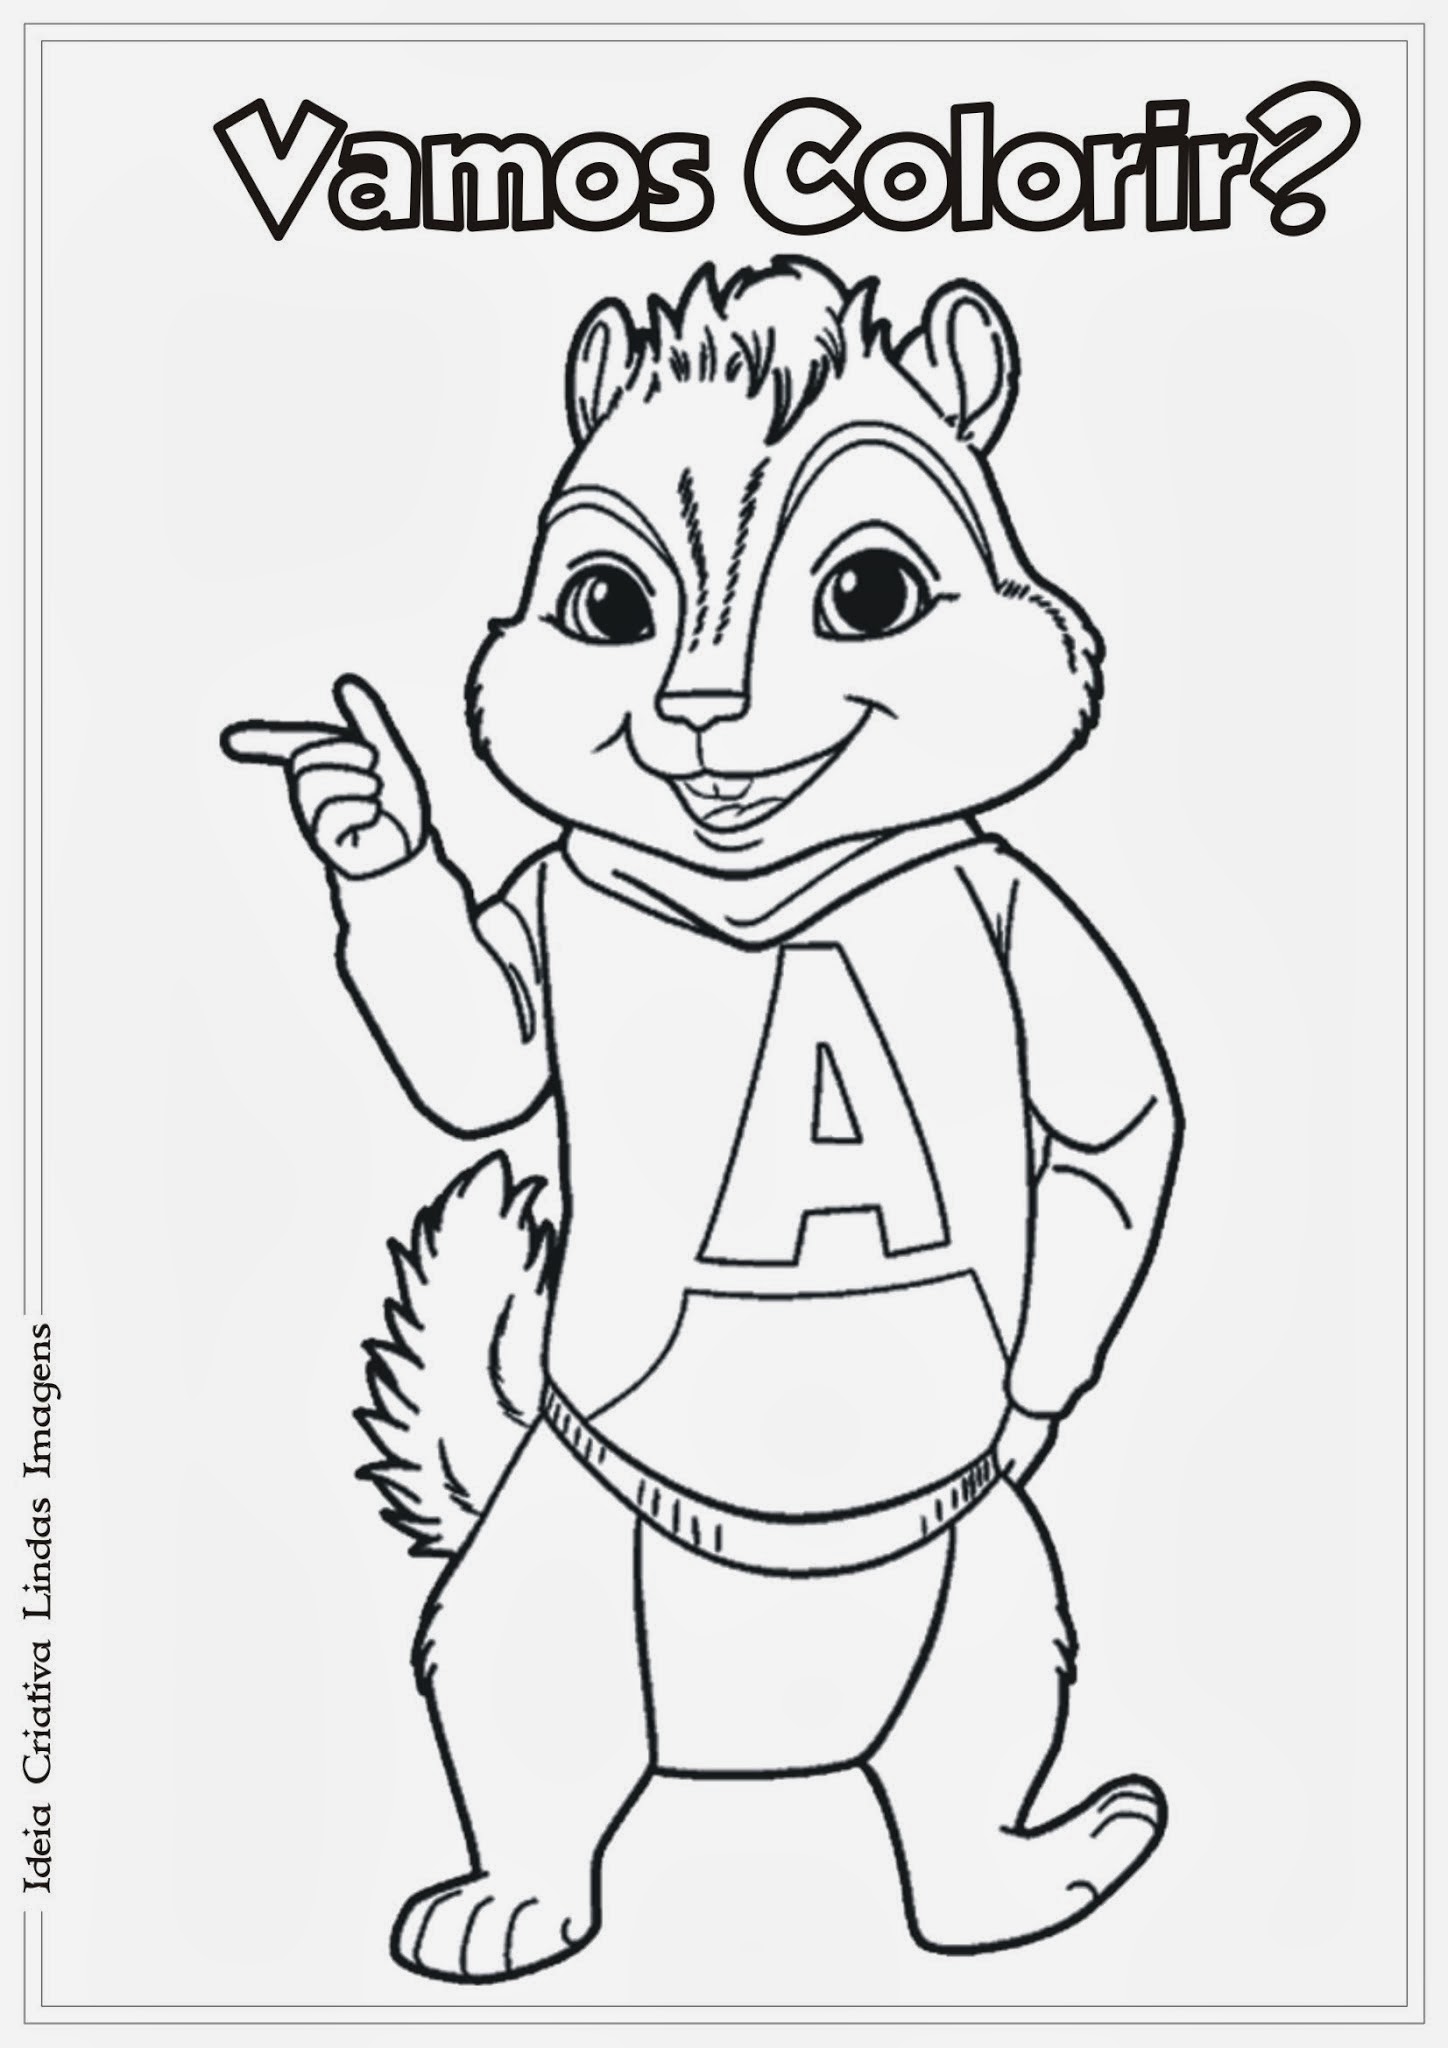 Desenho para colorir - Princesa com o esquilo!